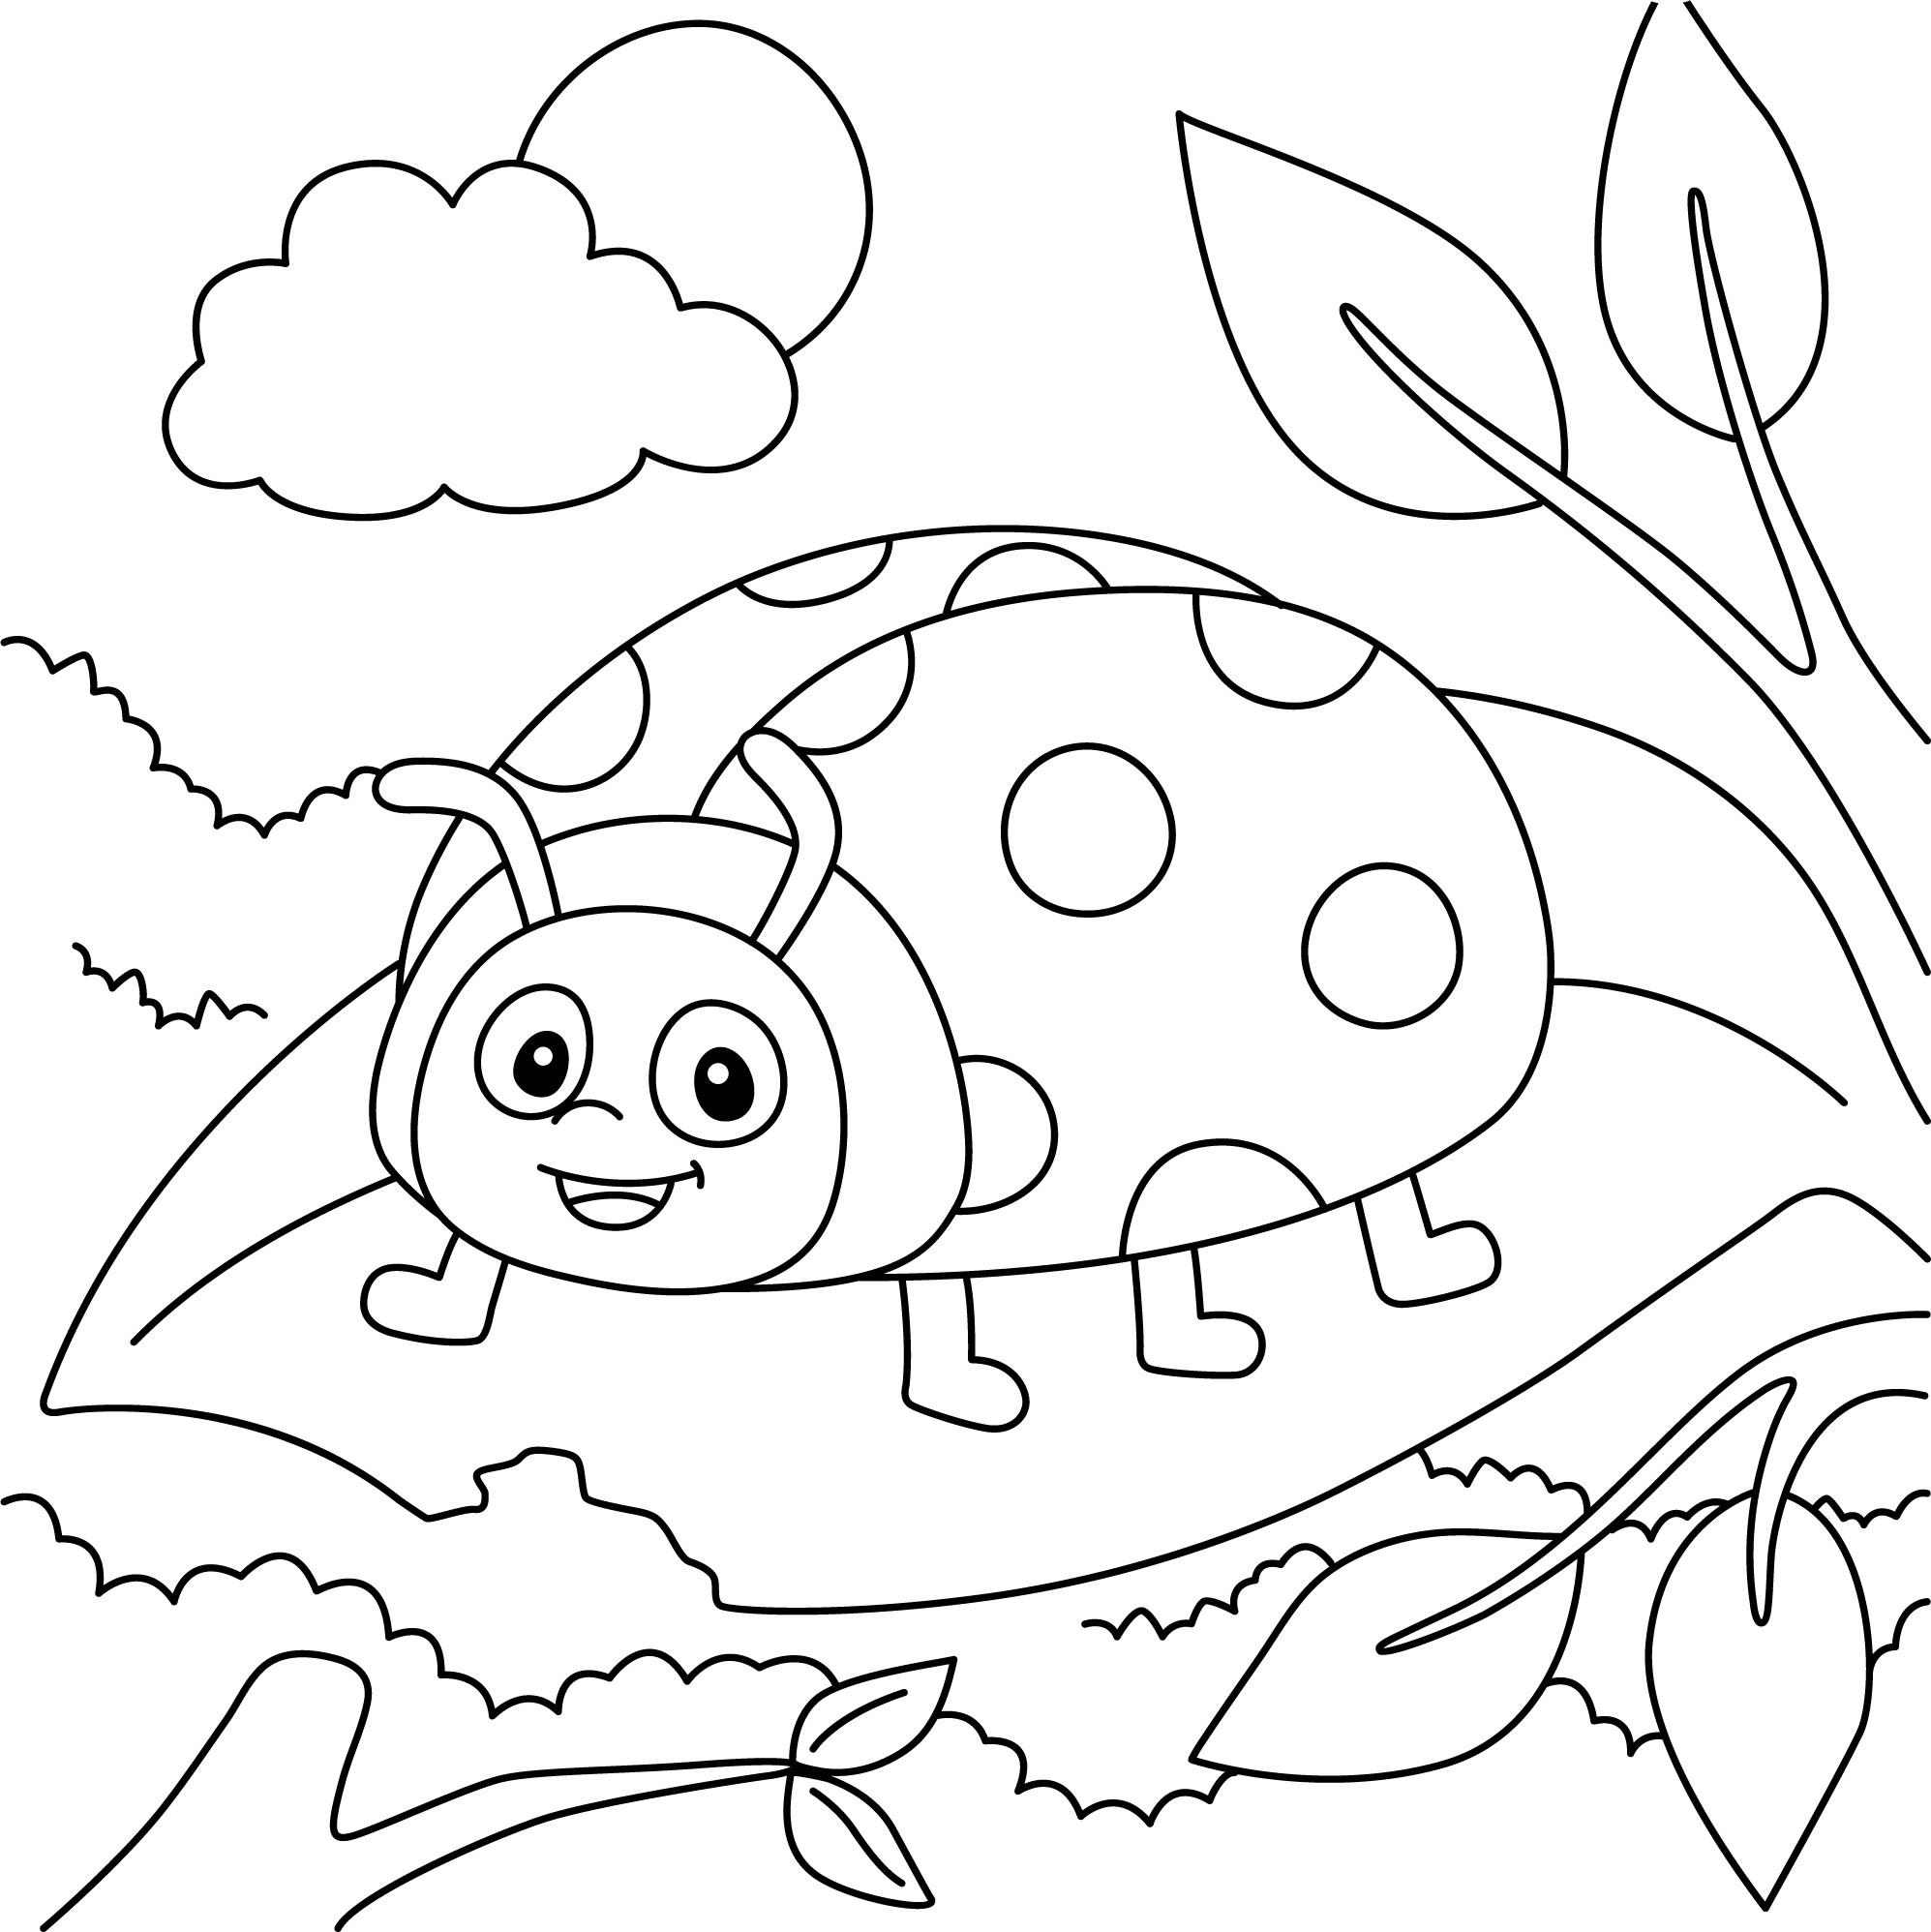 Раскраска для детей: божья коровка стоит на листочке на фоне облаков